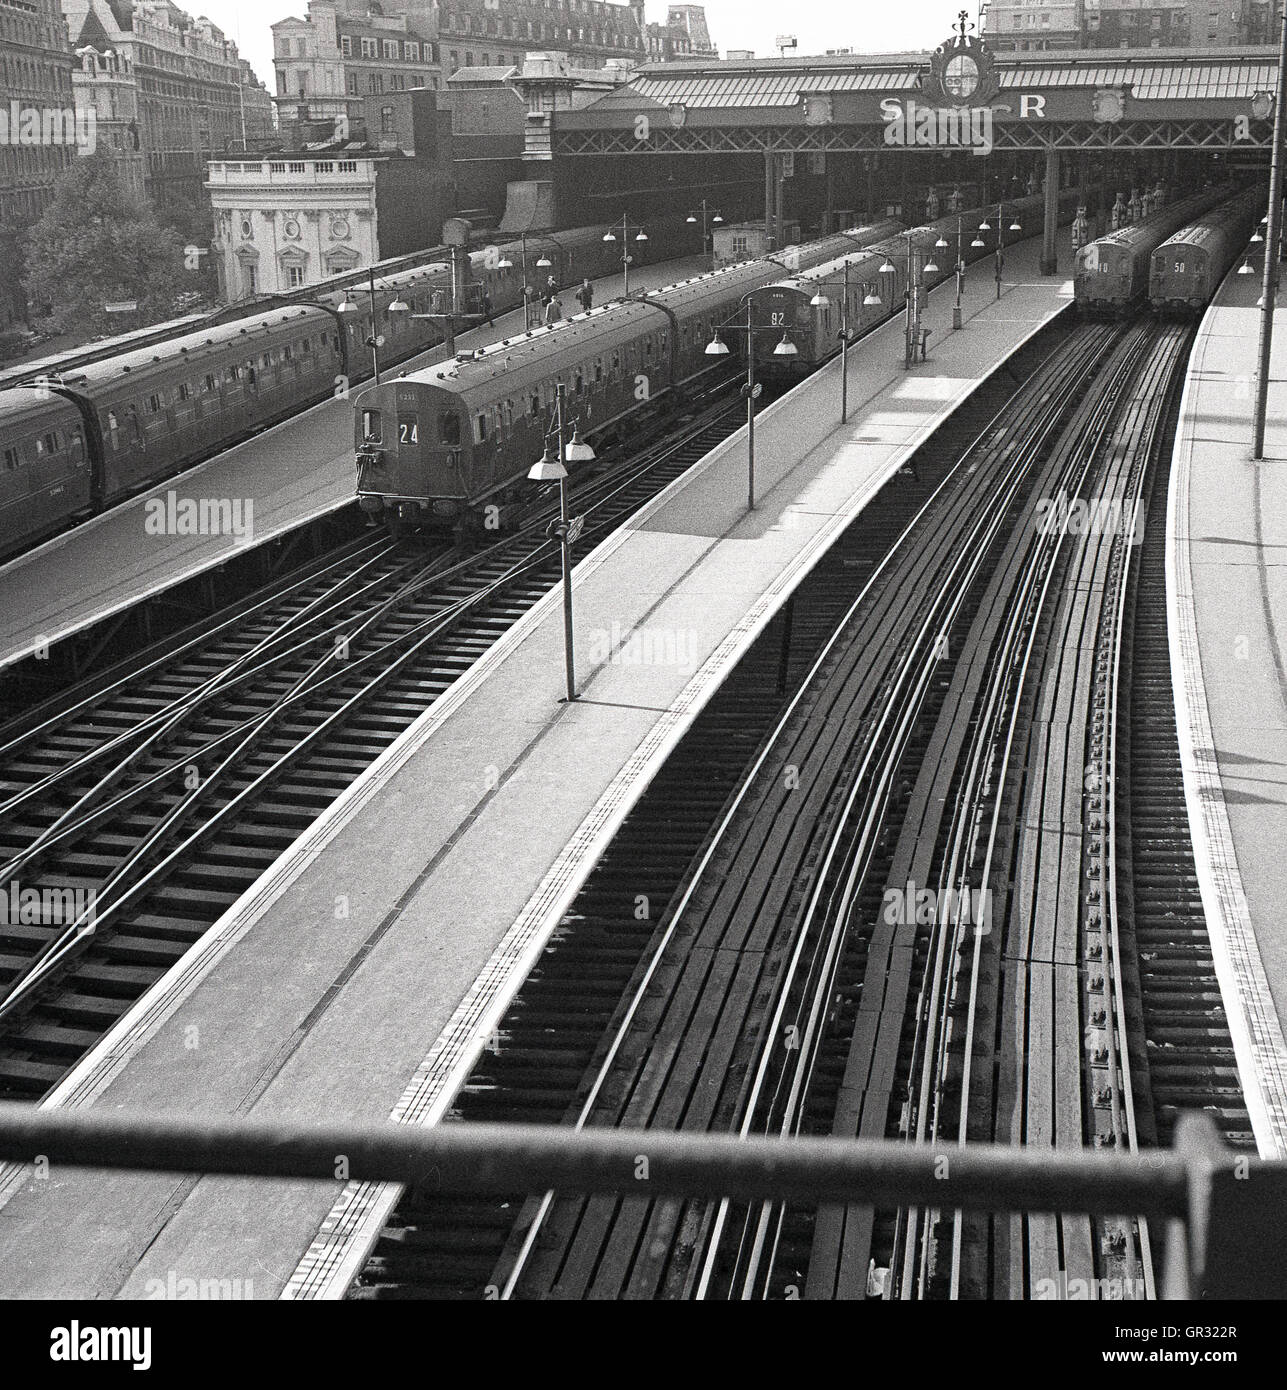 Degli anni Cinquanta, storico, diesel treni pendolari in partenza dalla stazione ferroviaria di Waterloo, Londra, Inghilterra, sede per Ferrovia Meridionale (SR) che divenne nel 1948 sotto la nazionalizzazione, Regione meridionale delle ferrovie britanniche. Foto Stock